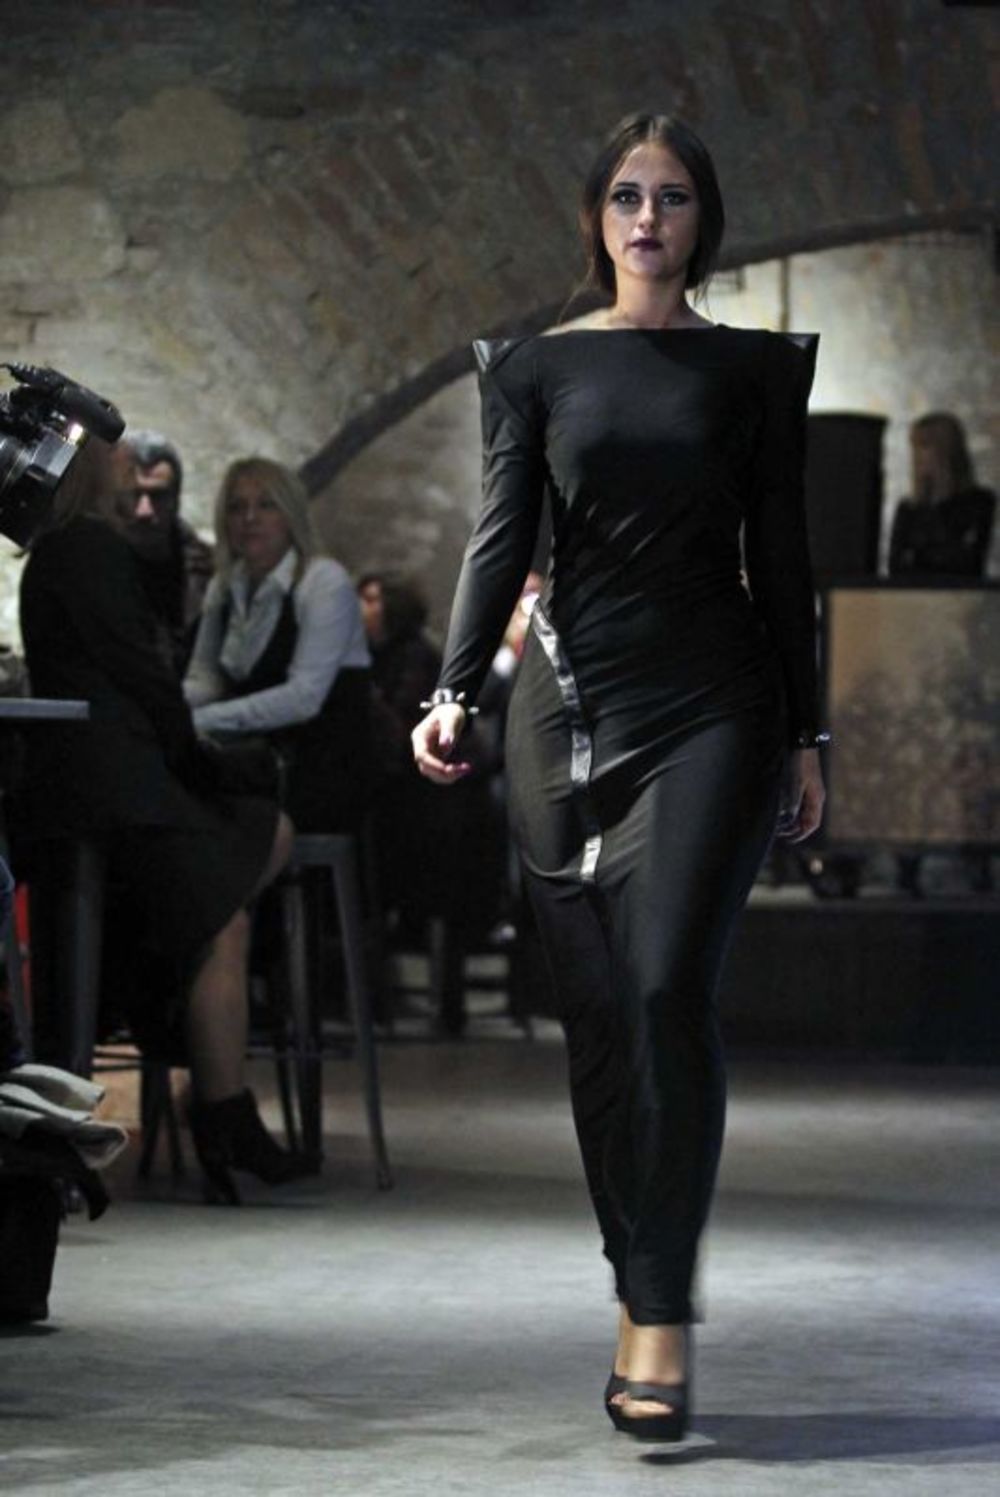 Beograđanka Jelisaveta Nina Milojević, modna blogerka i studentkinja modnih studija na prestižnom Univerzitetu London College of Fashion, održala je svoju prvu modnu reviju pod nazivom One u predstoničkom klubu Krug. Na reviji su predstavljene elegantne, sveča